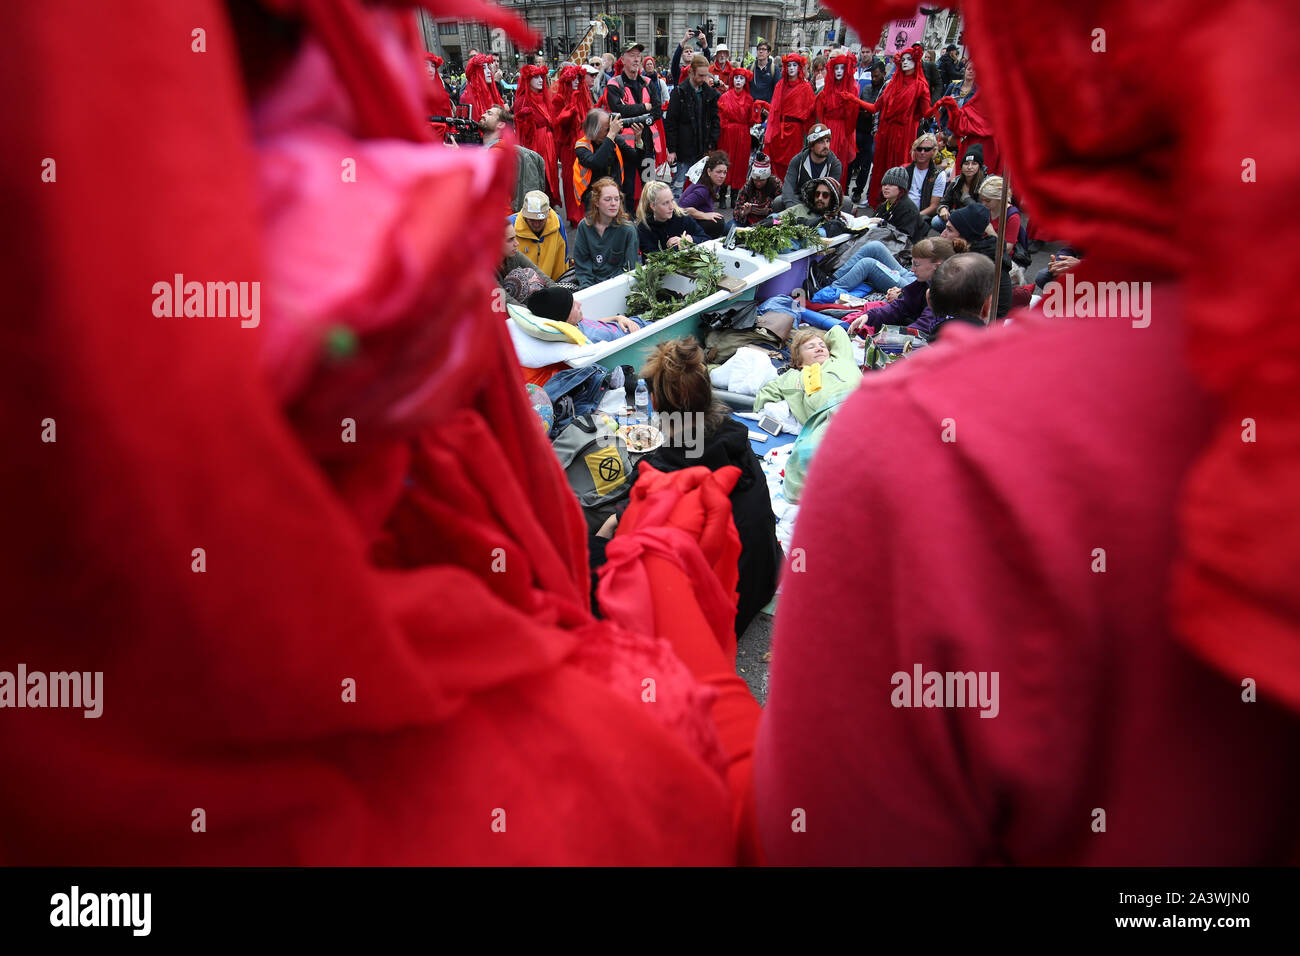 Les rebelles rouge encerclent les manifestants dans des baignoires à Trafalgar Square au cours de la quatrième journée d'une rébellion d'Extinction (XR) Manifestation à Westminster, Londres. Banque D'Images